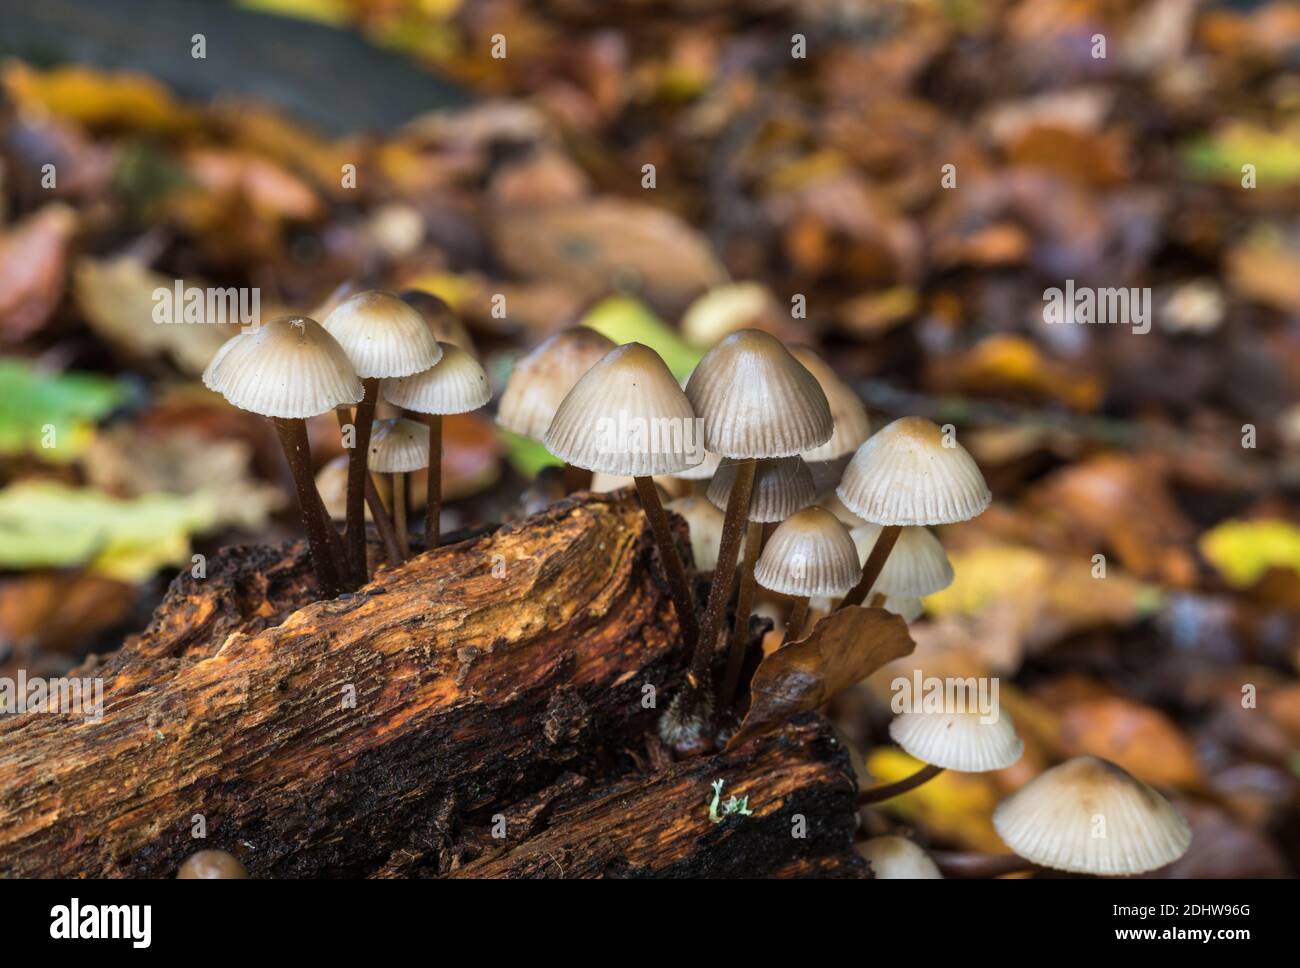 Fungi - Mycena species Stock Photo